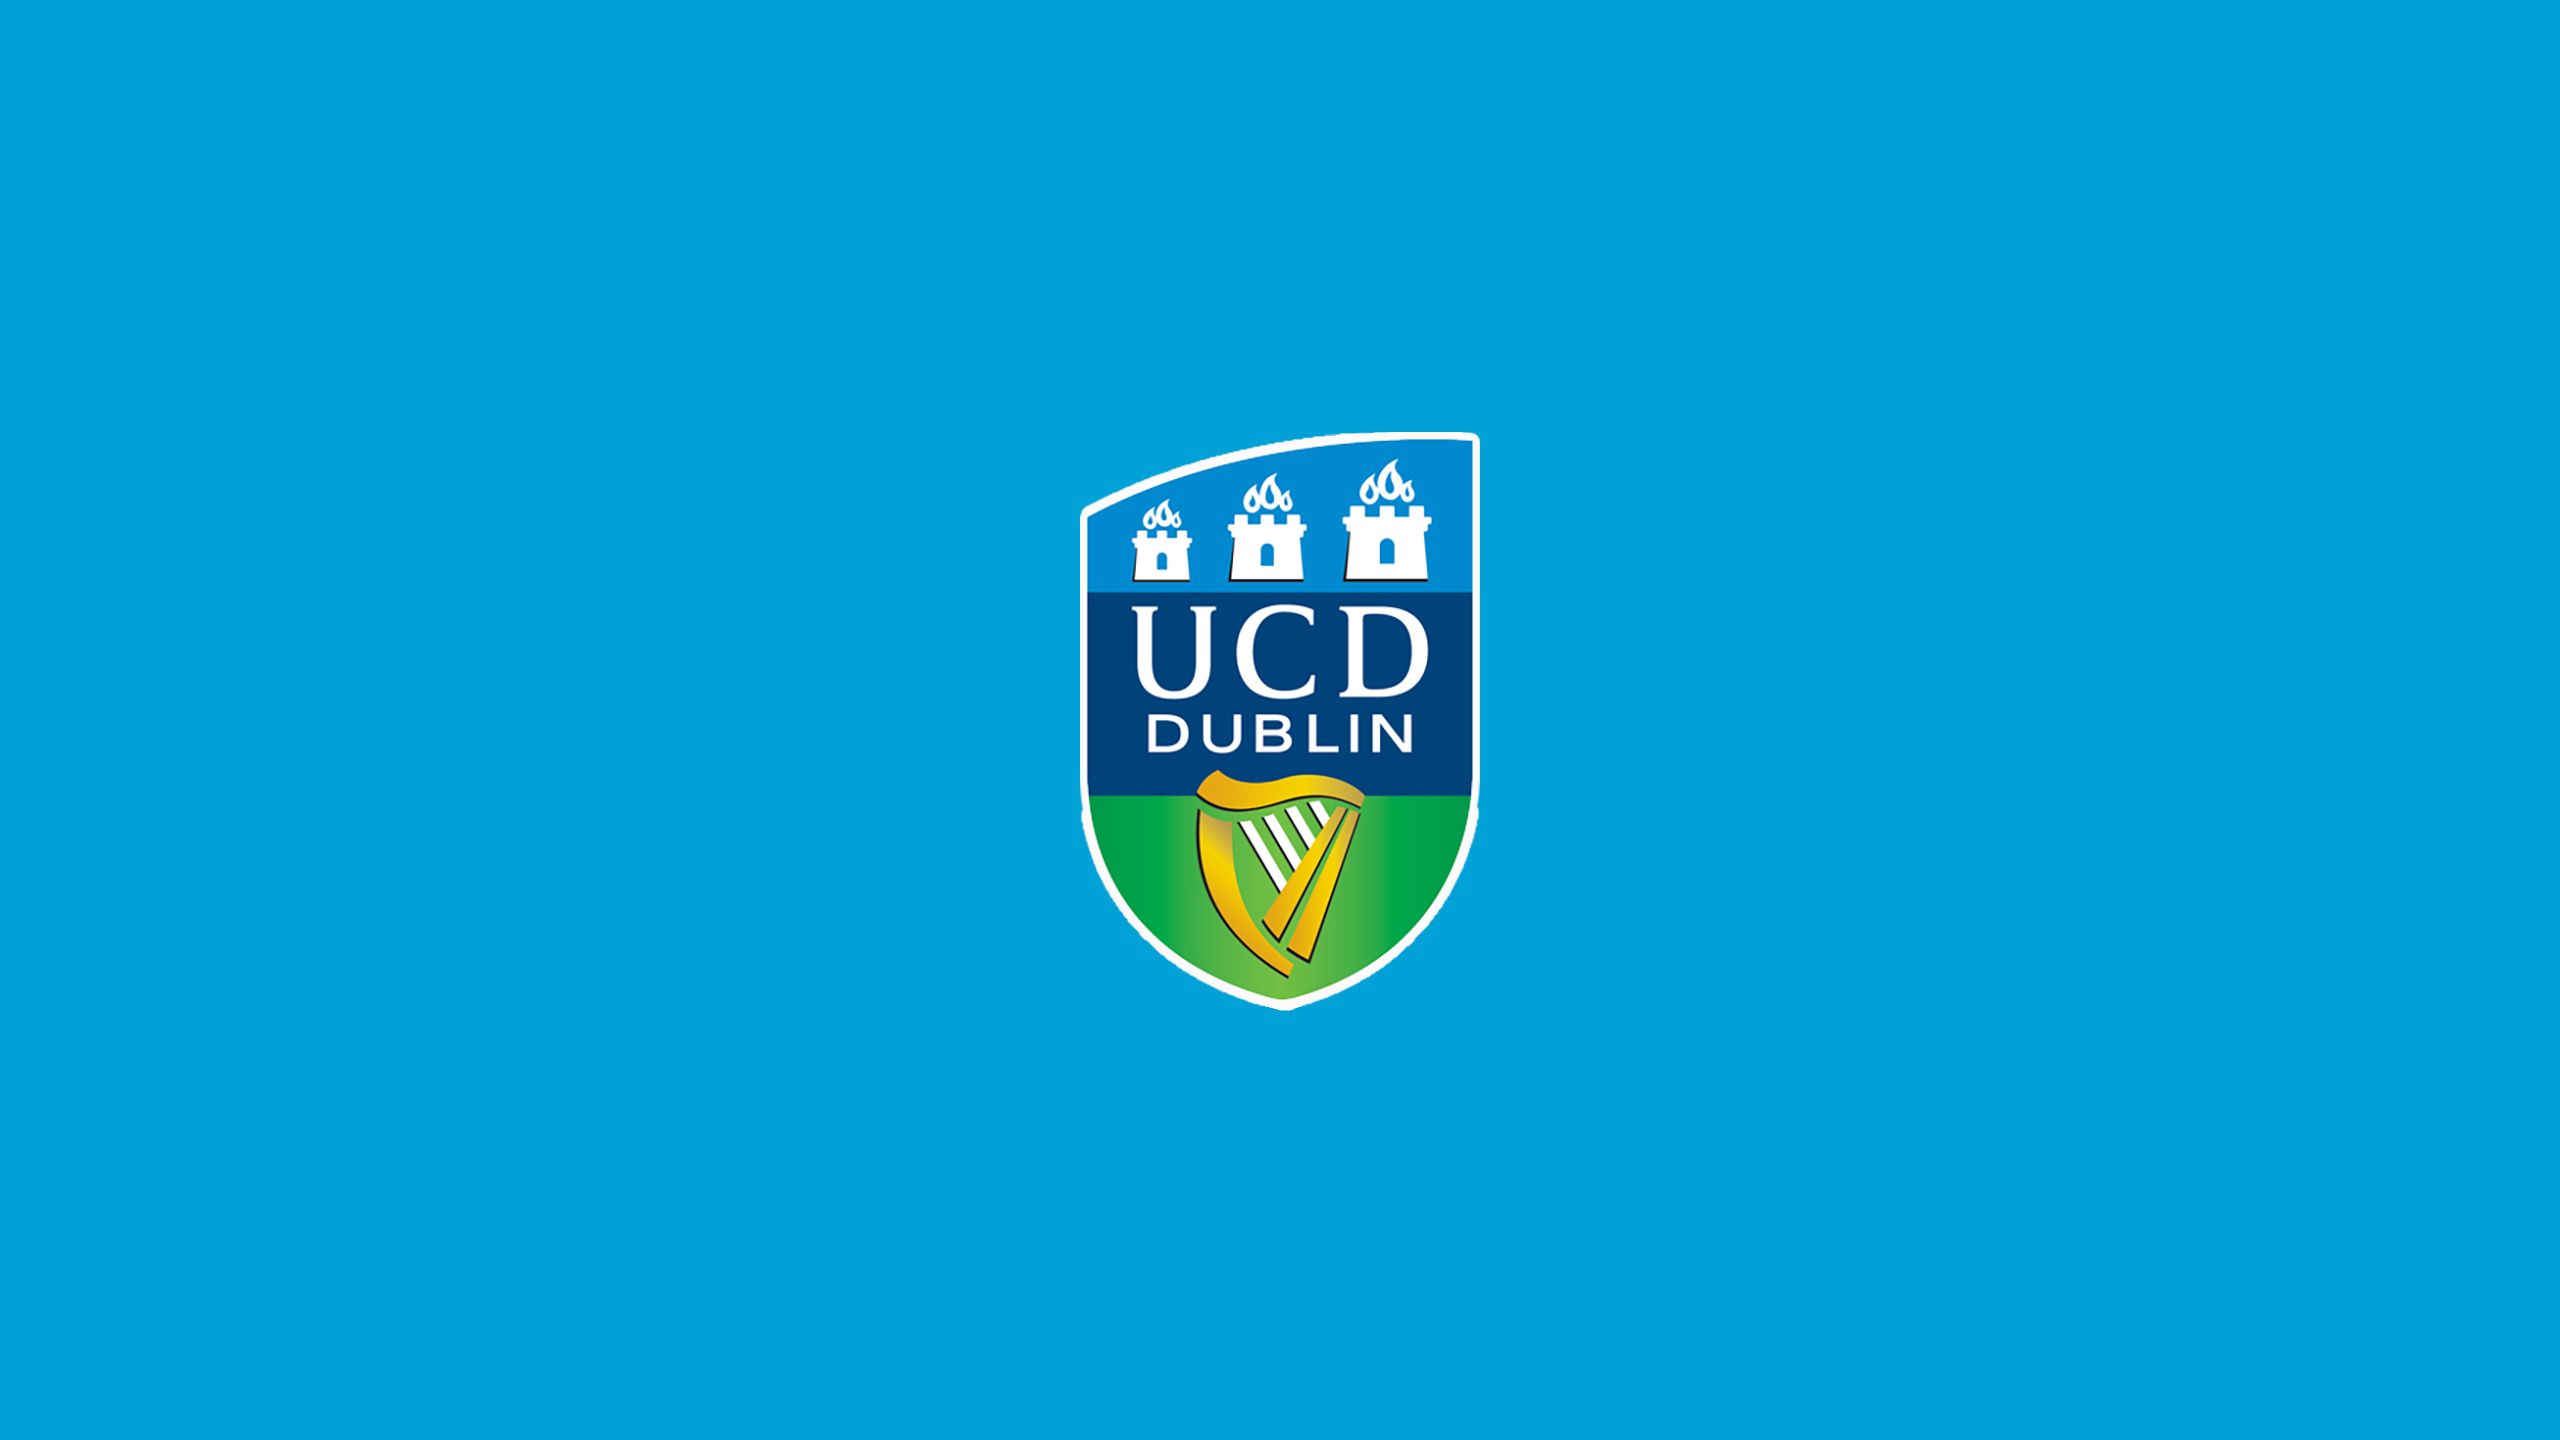 8k University College Dublin A F C Images